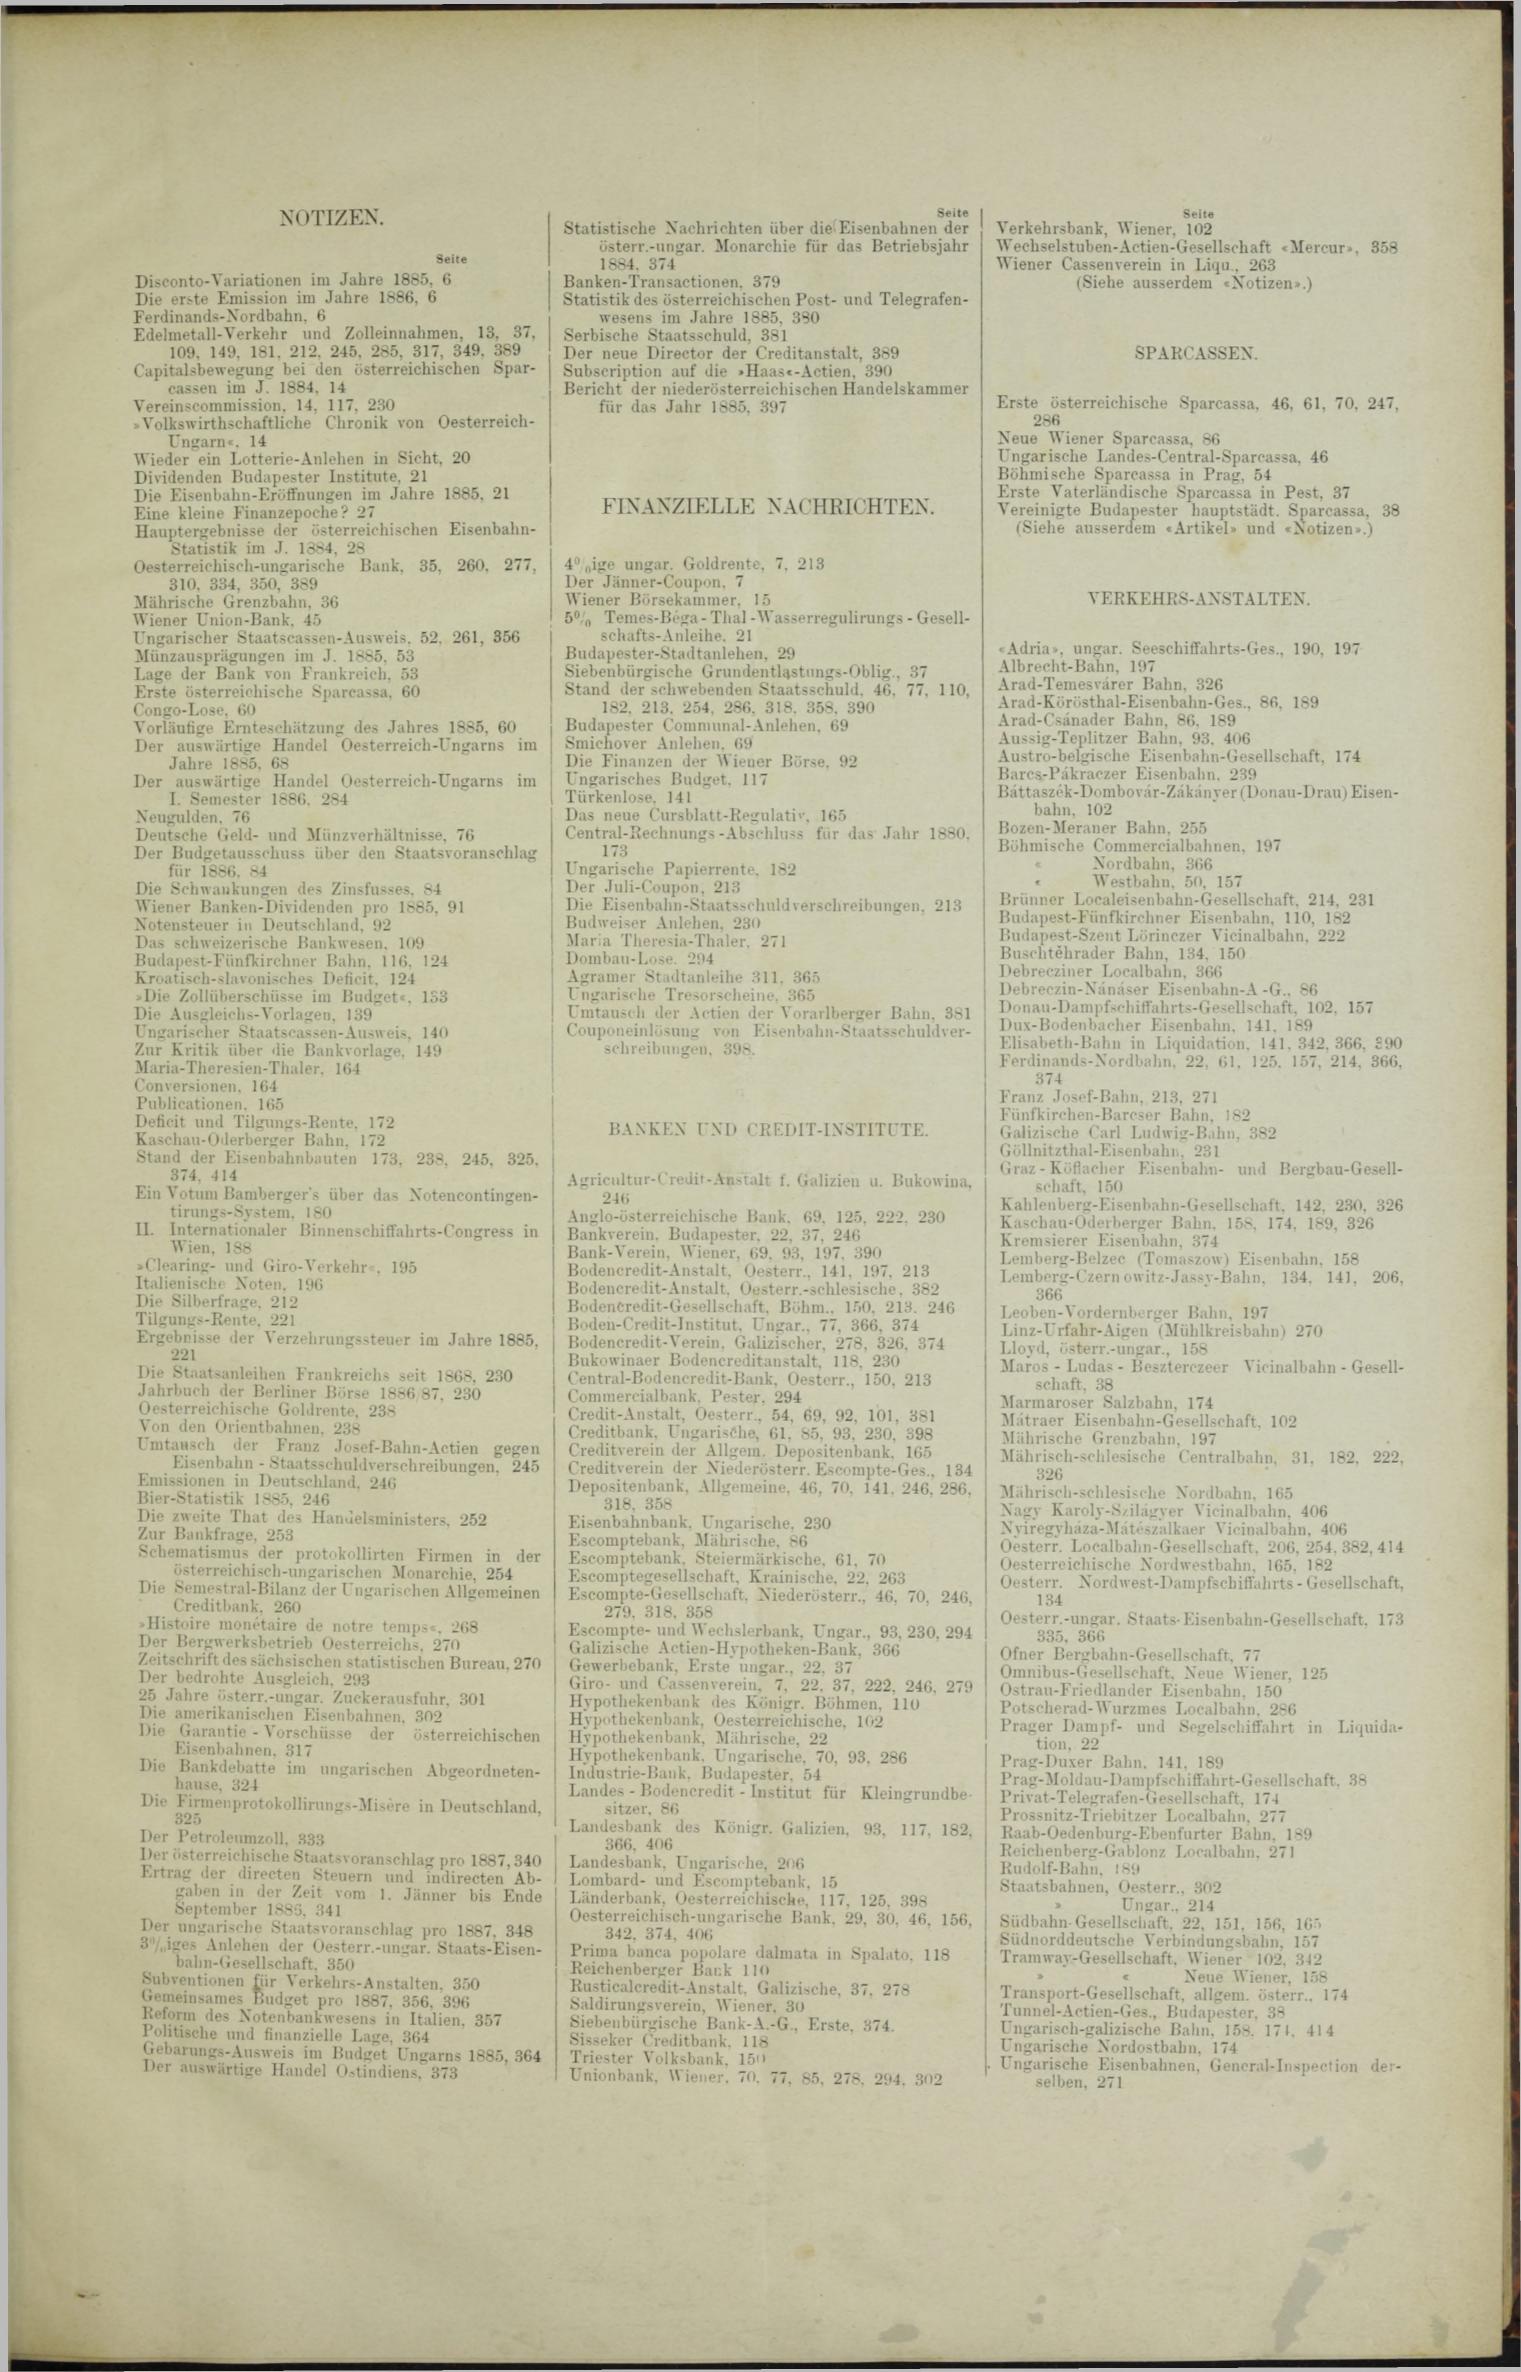 Der Tresor 22.04.1886 - Seite 11